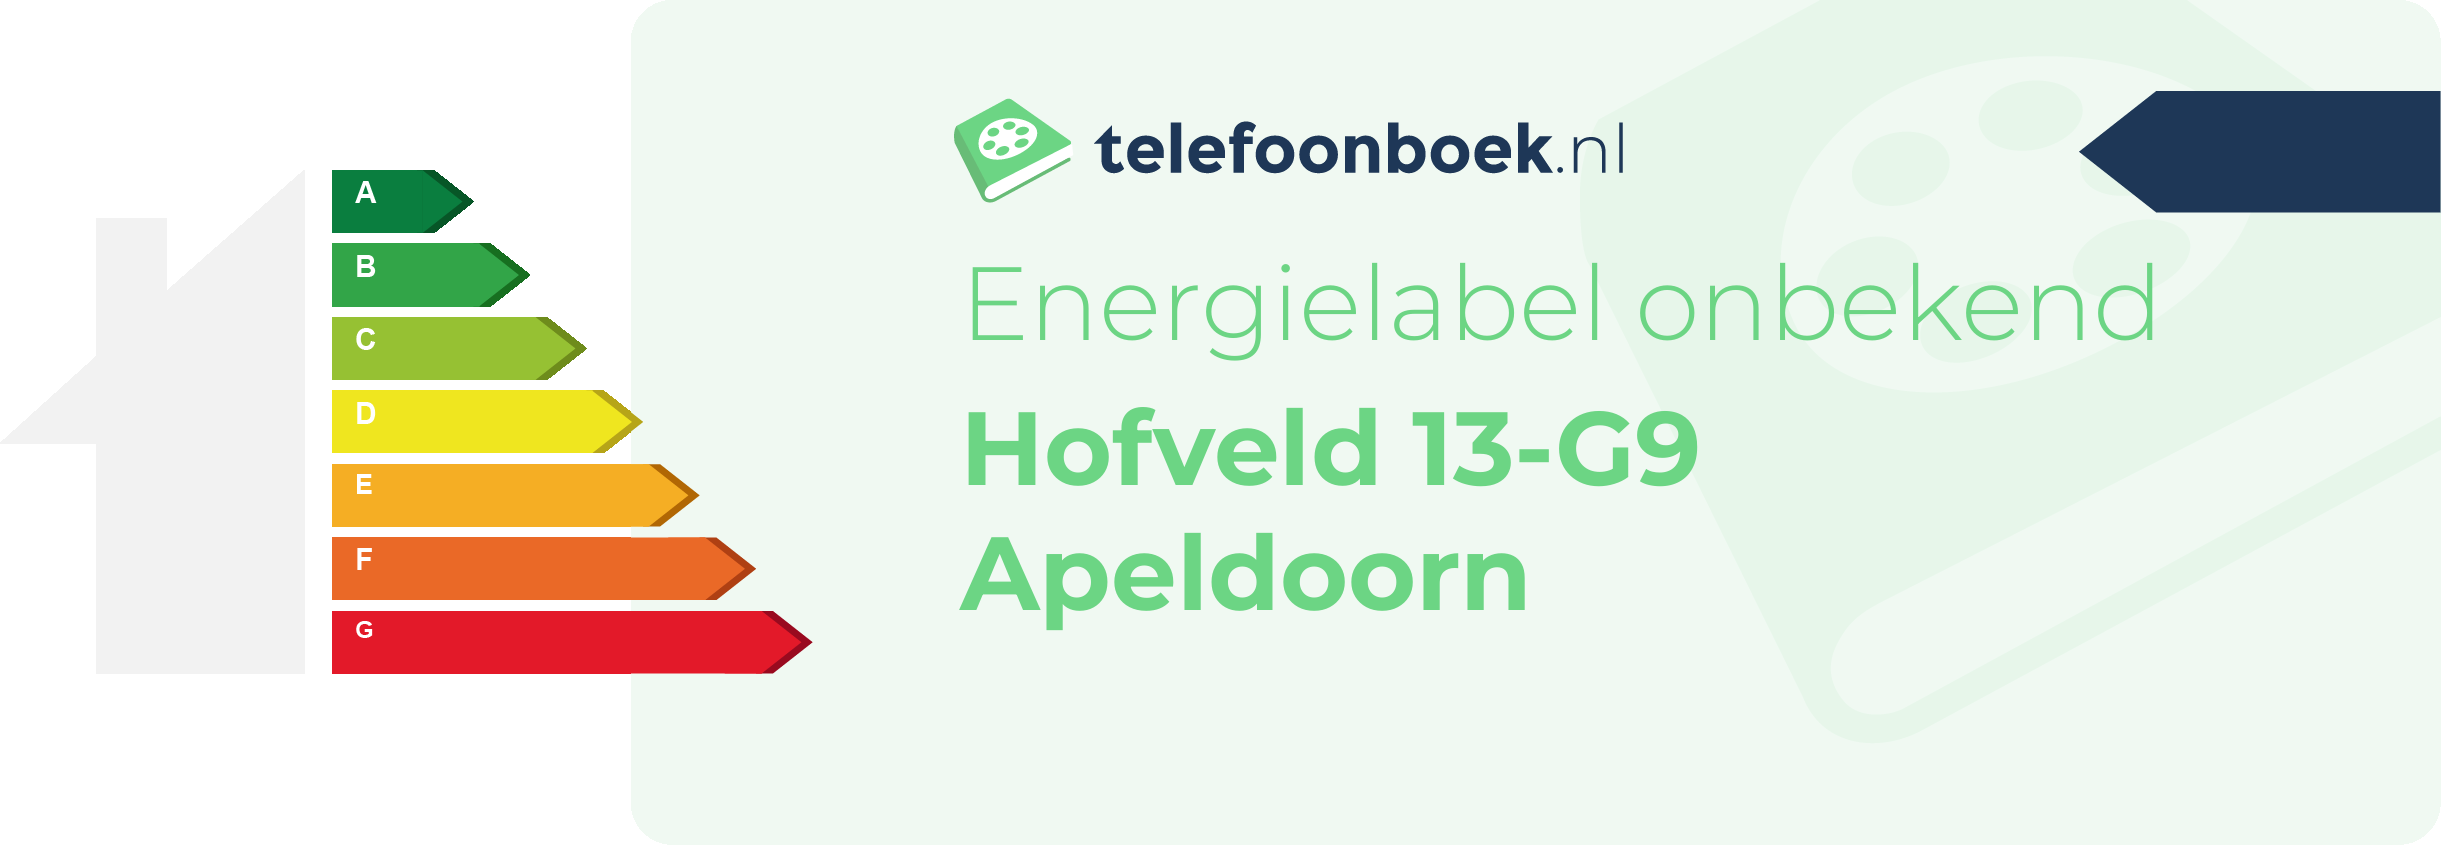 Energielabel Hofveld 13-G9 Apeldoorn